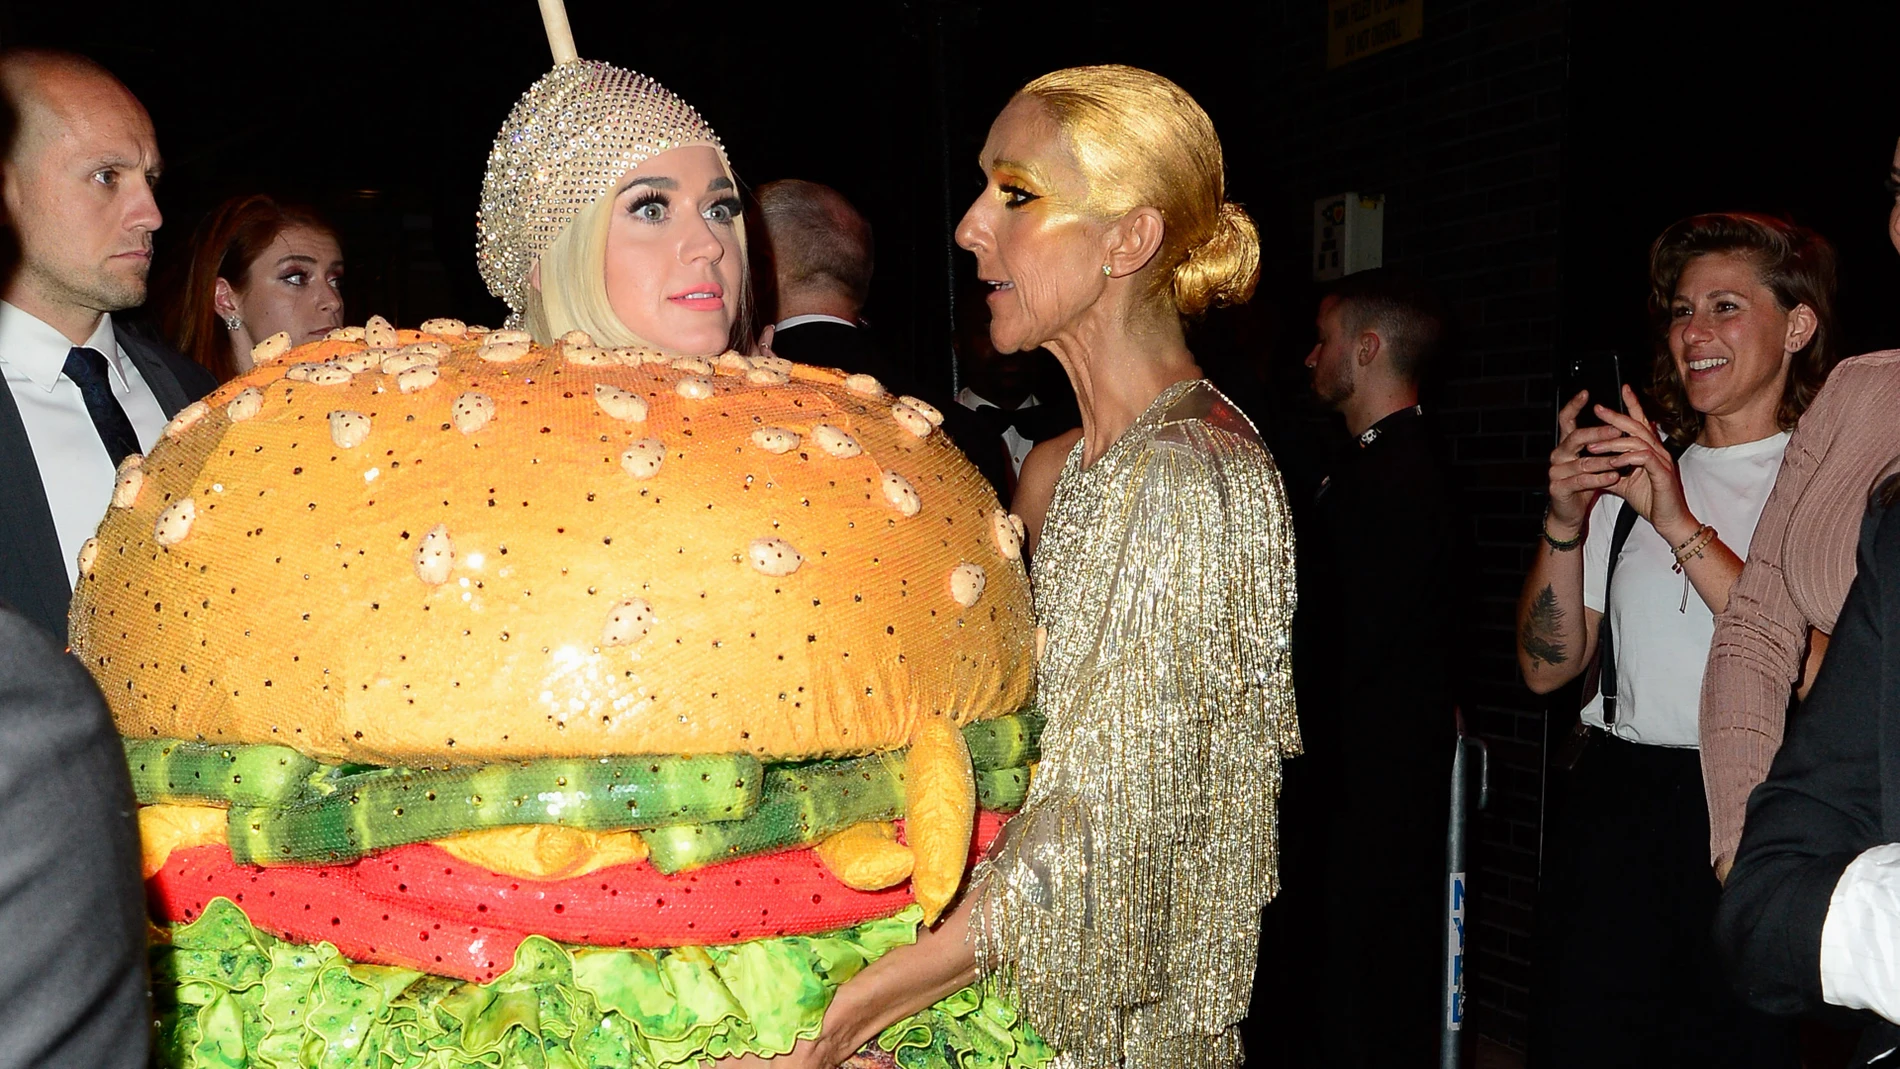 Katy Perry subasta sus vestidos más extravagantes